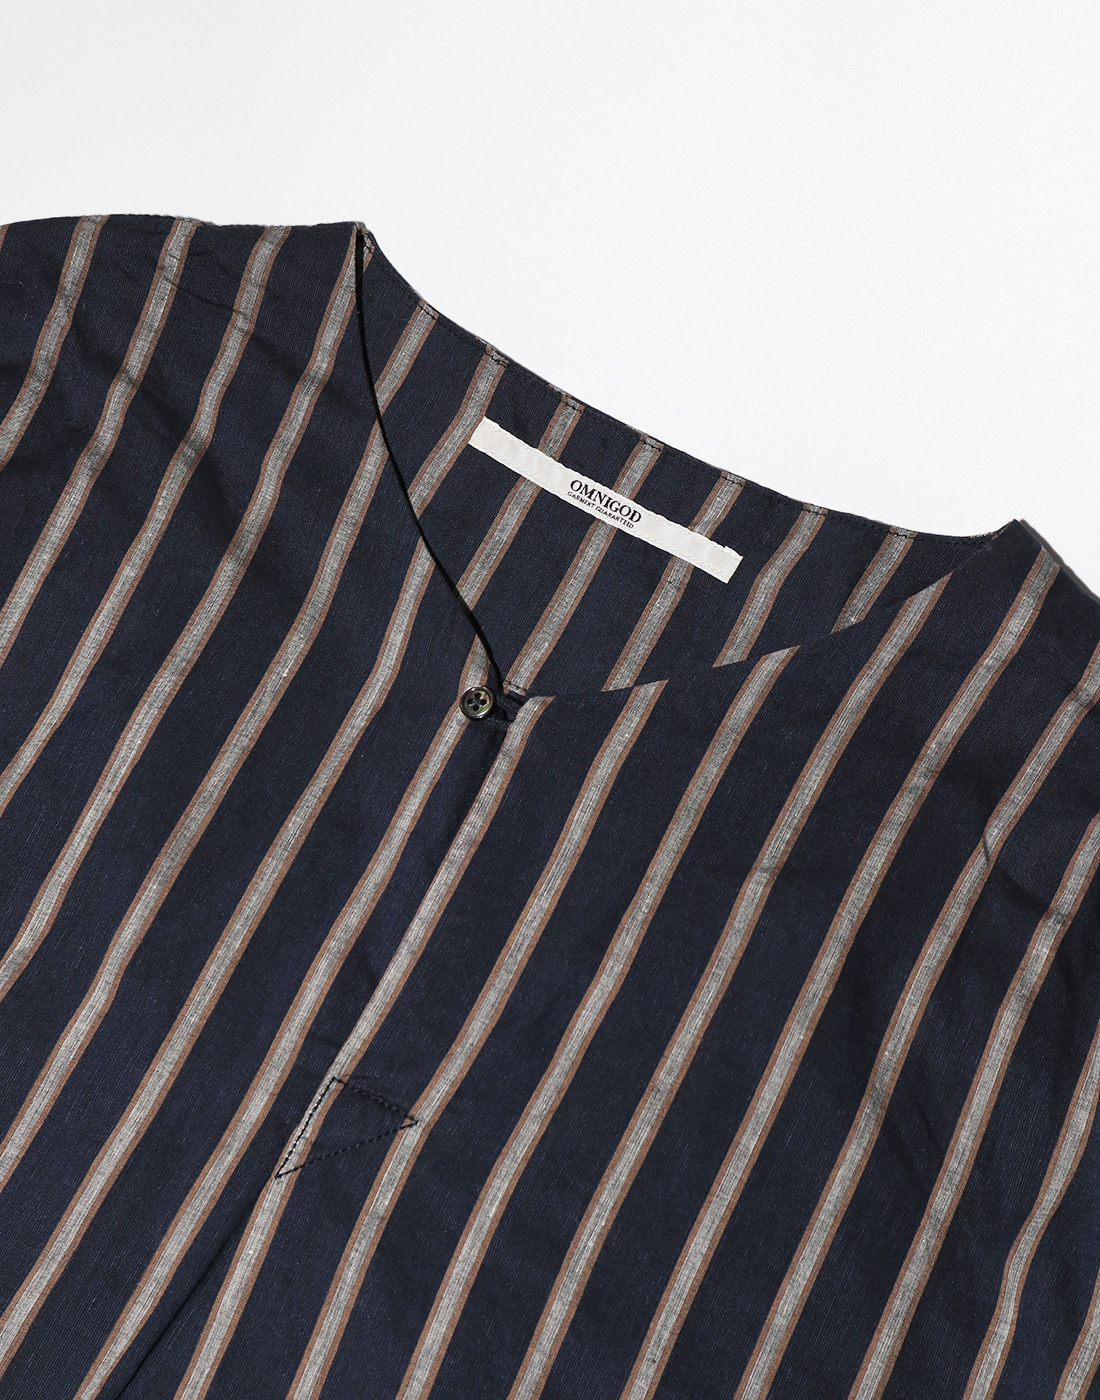 OMNIGOD Stripe Half Shirts, Navy